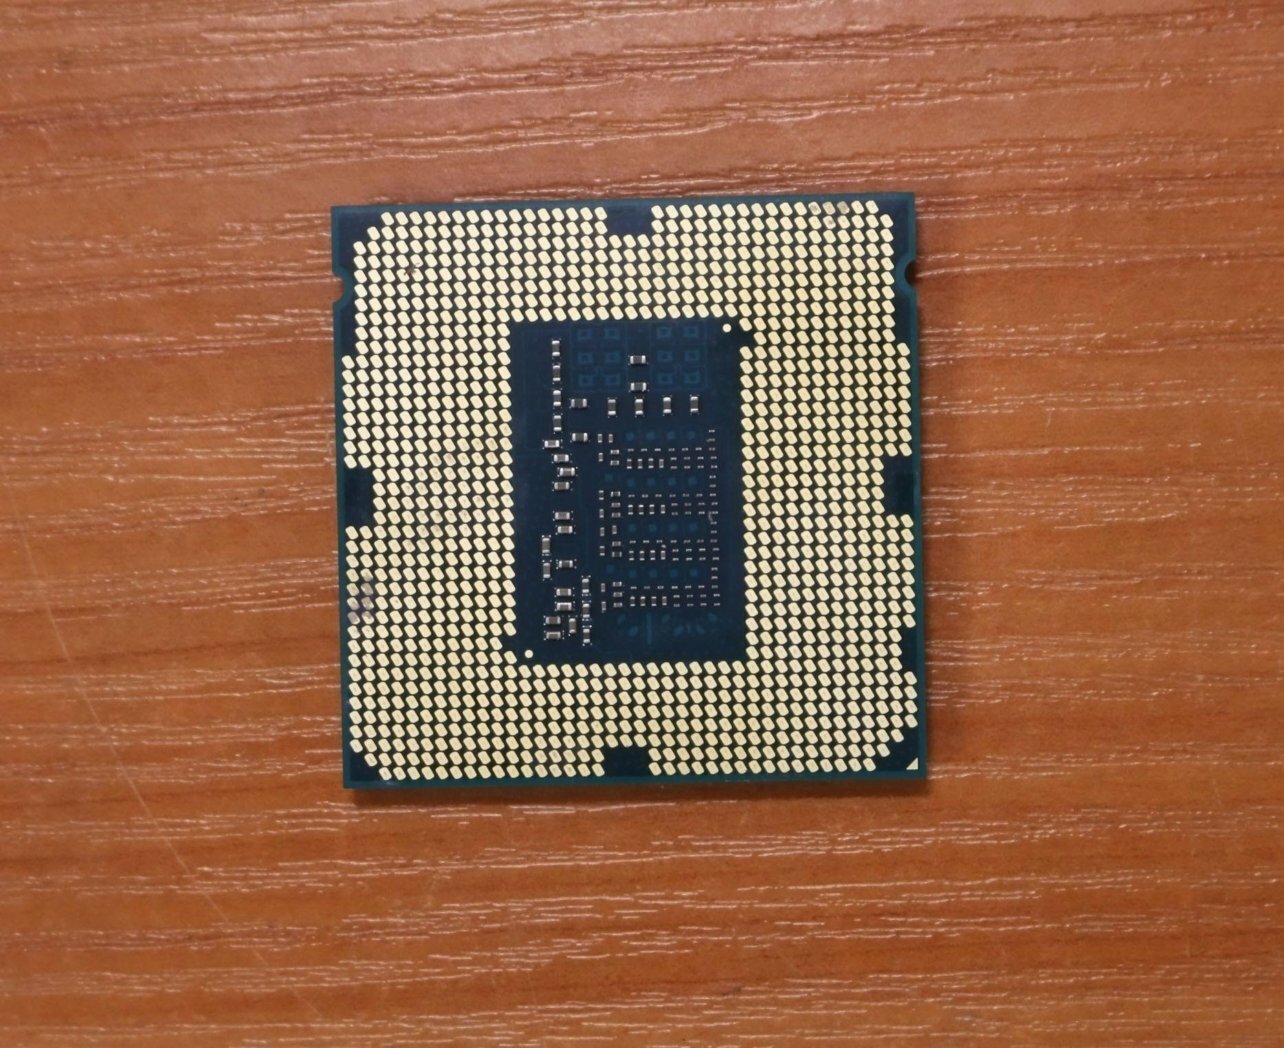 Процессор Intel - фото №11